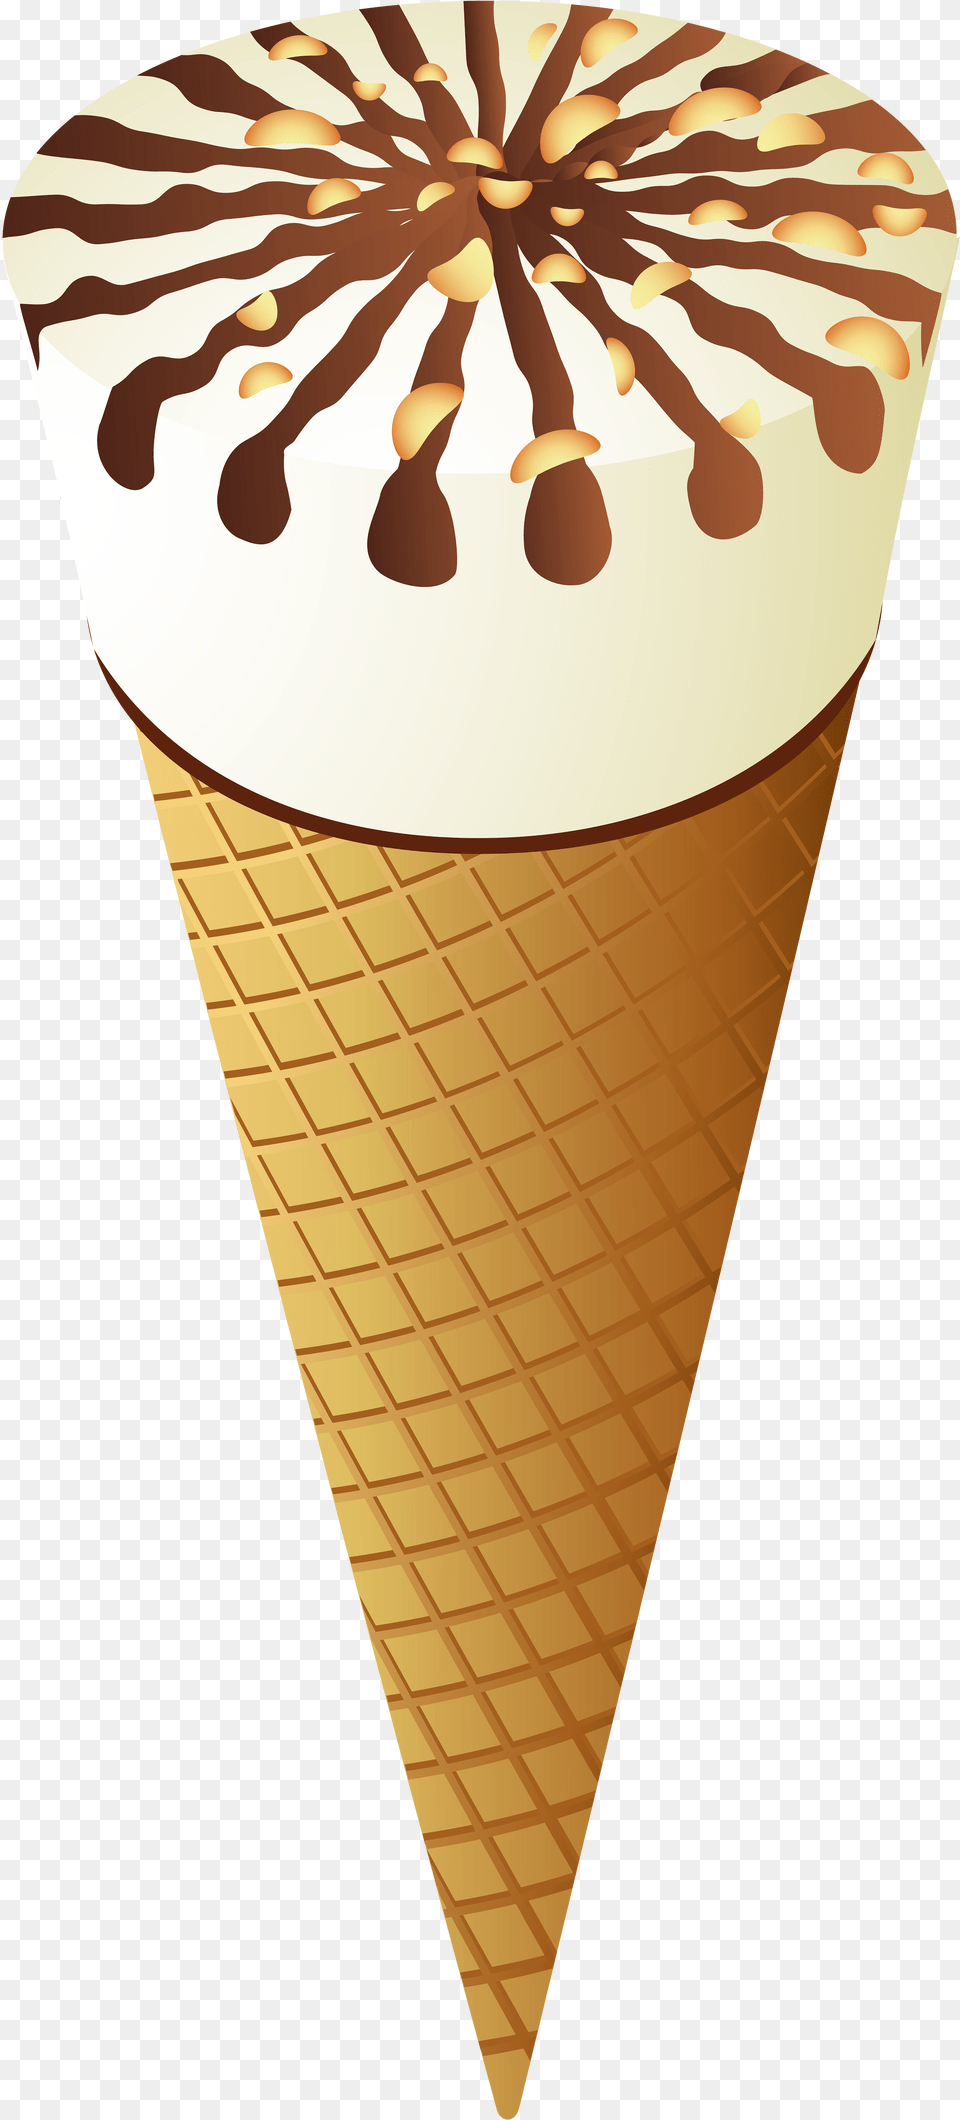 Ice Cream Cone Clip Art Ice Cream Cone, Dessert, Food, Ice Cream Free Png